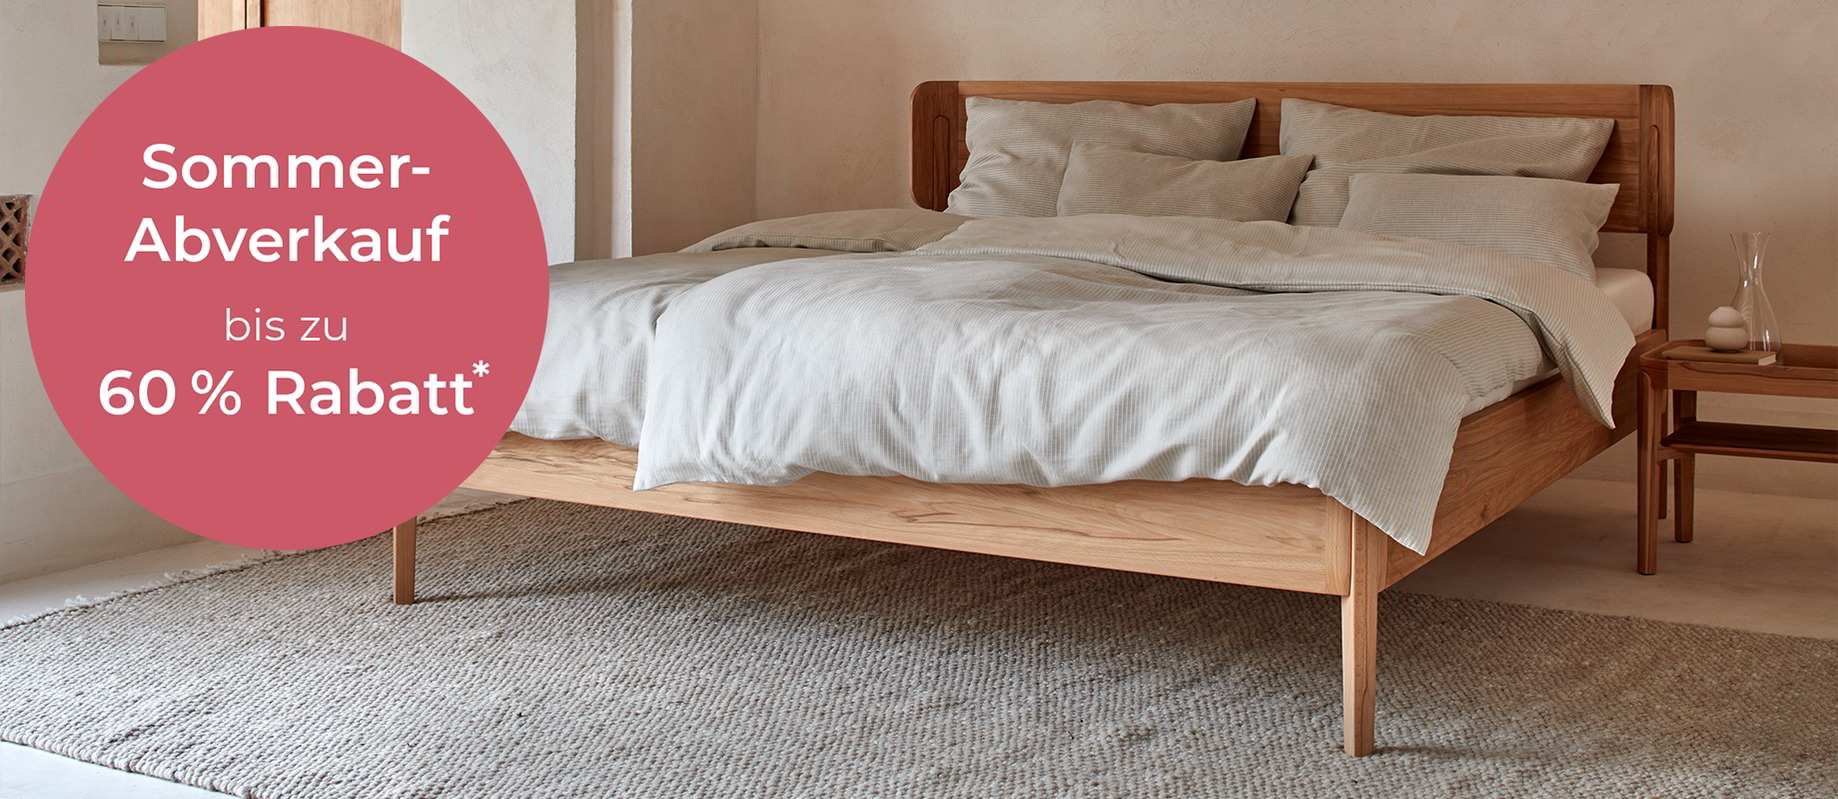 Holzbett Alwy steht im Schlafzimmer, weiße Bettwäsche liegt auf dem Bett, Sommerabverkauf